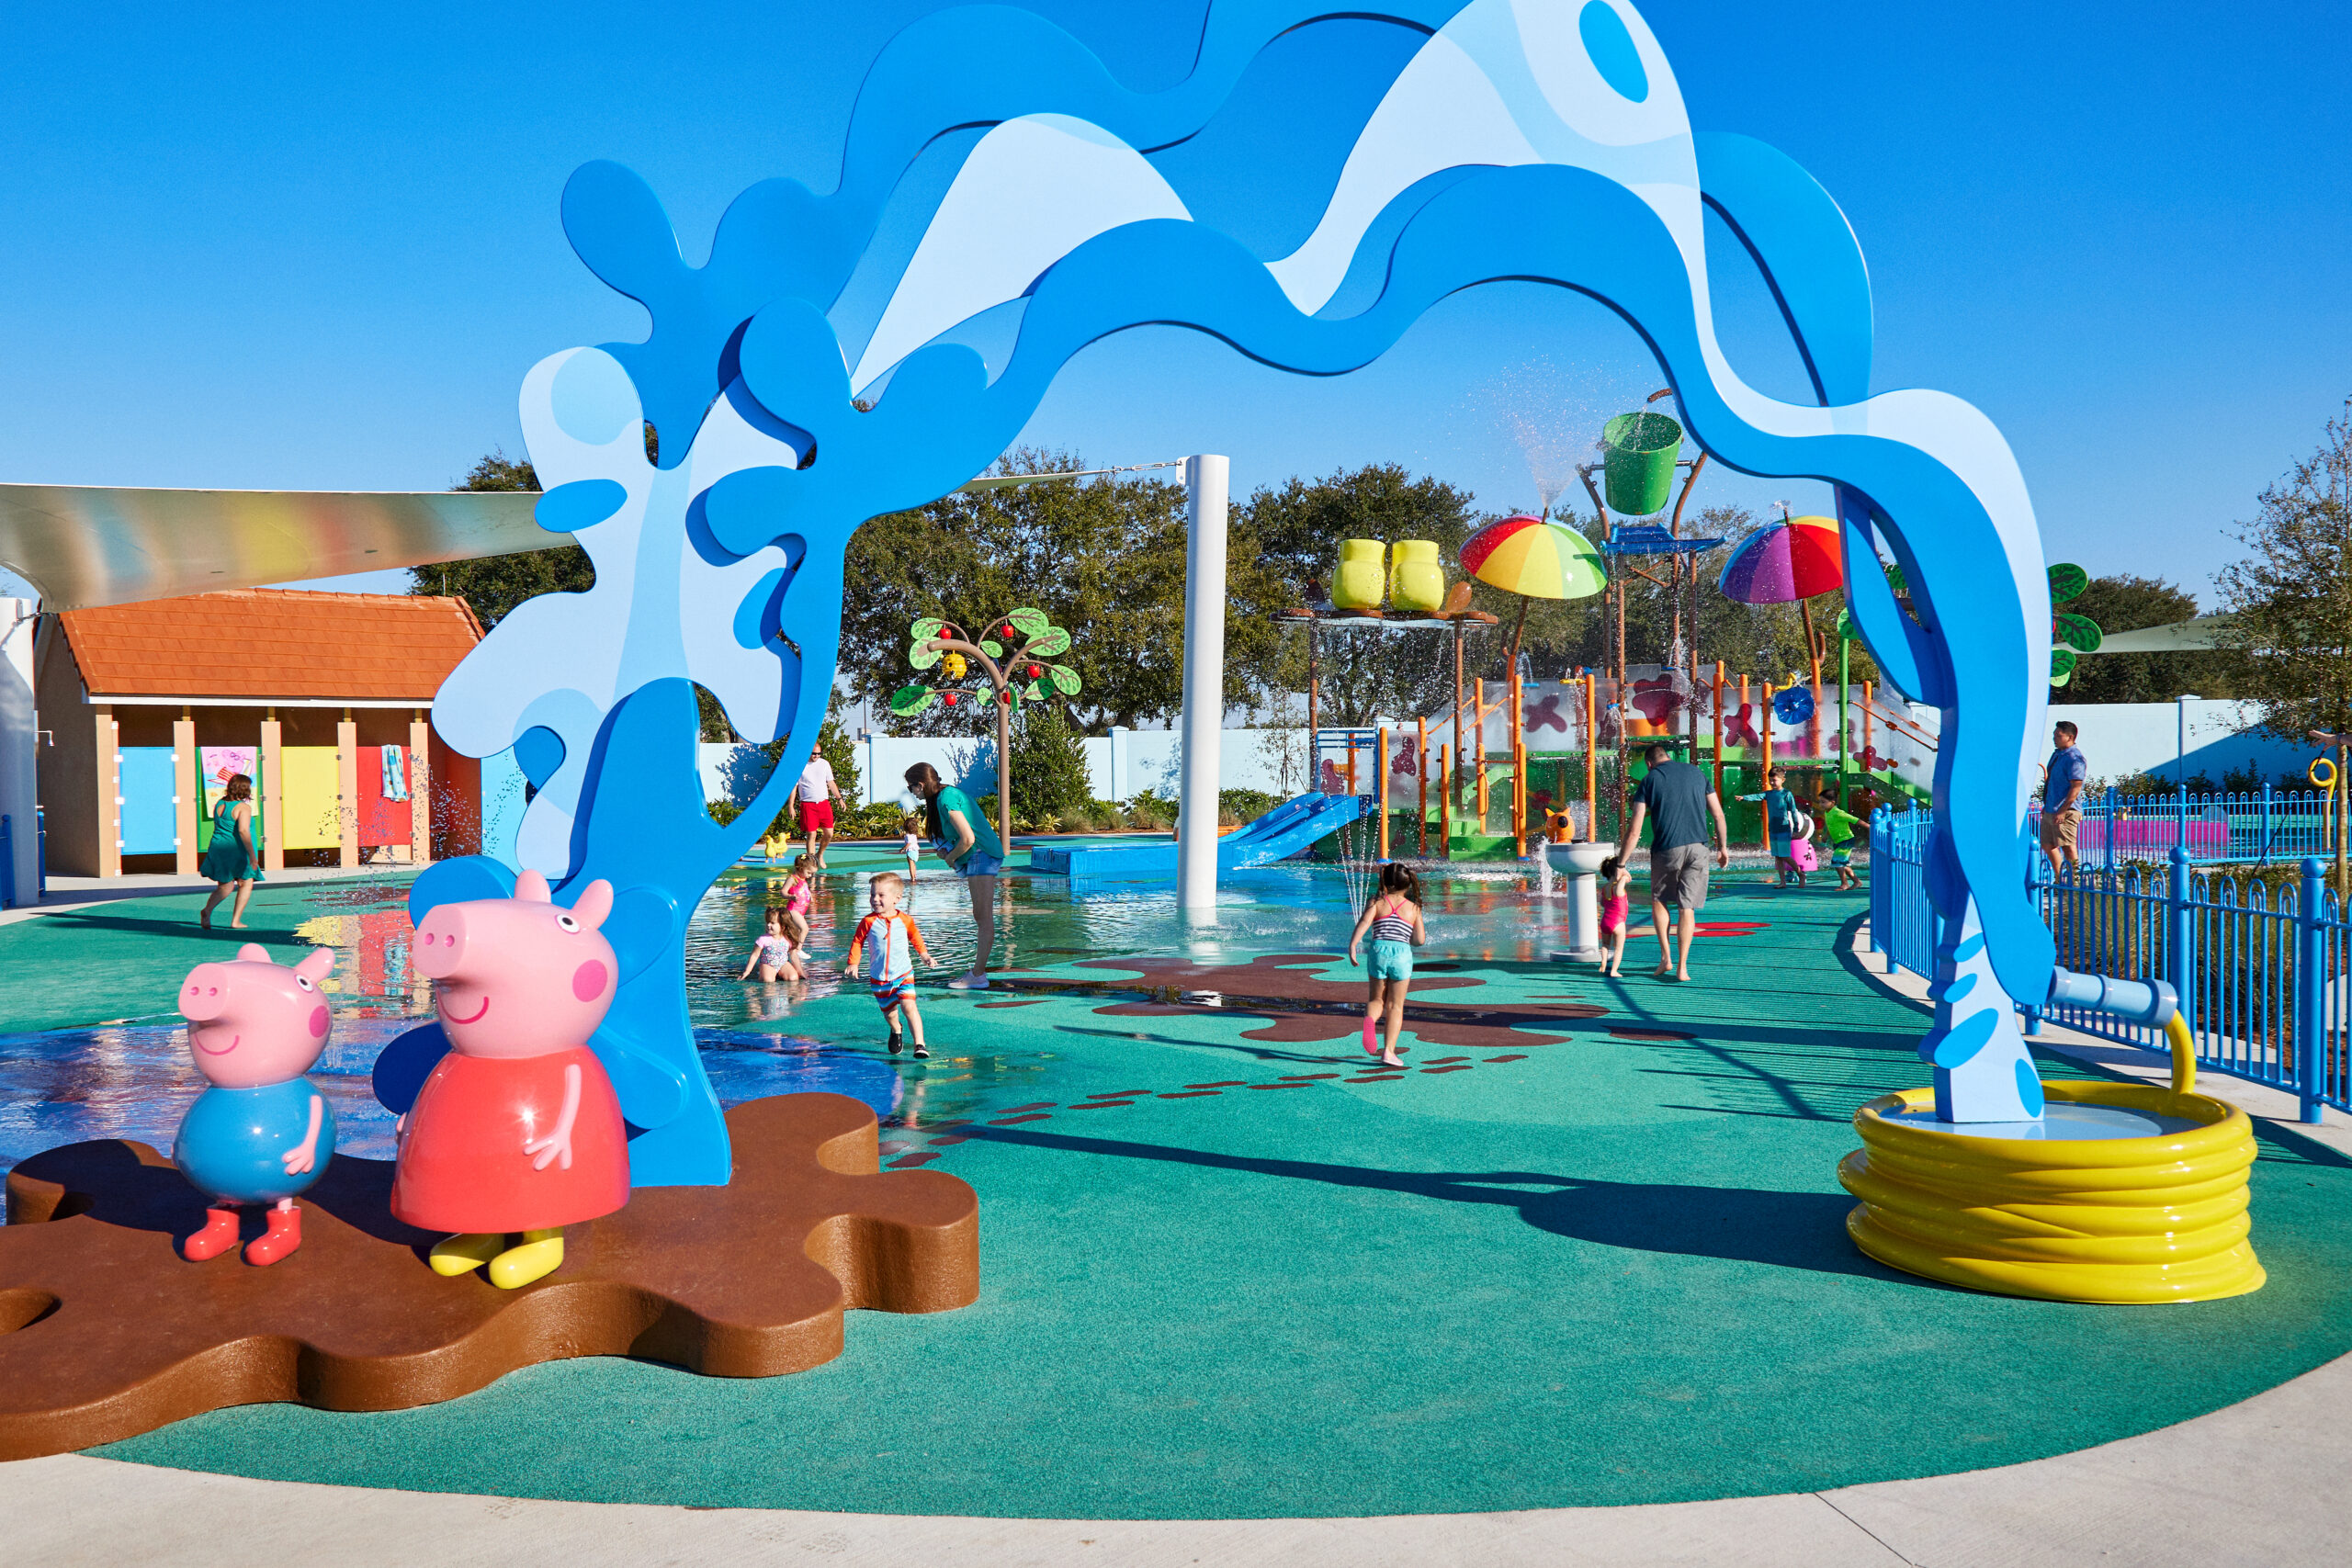 Muddy Puddles Splash Pad at Peppa Pig Theme Park